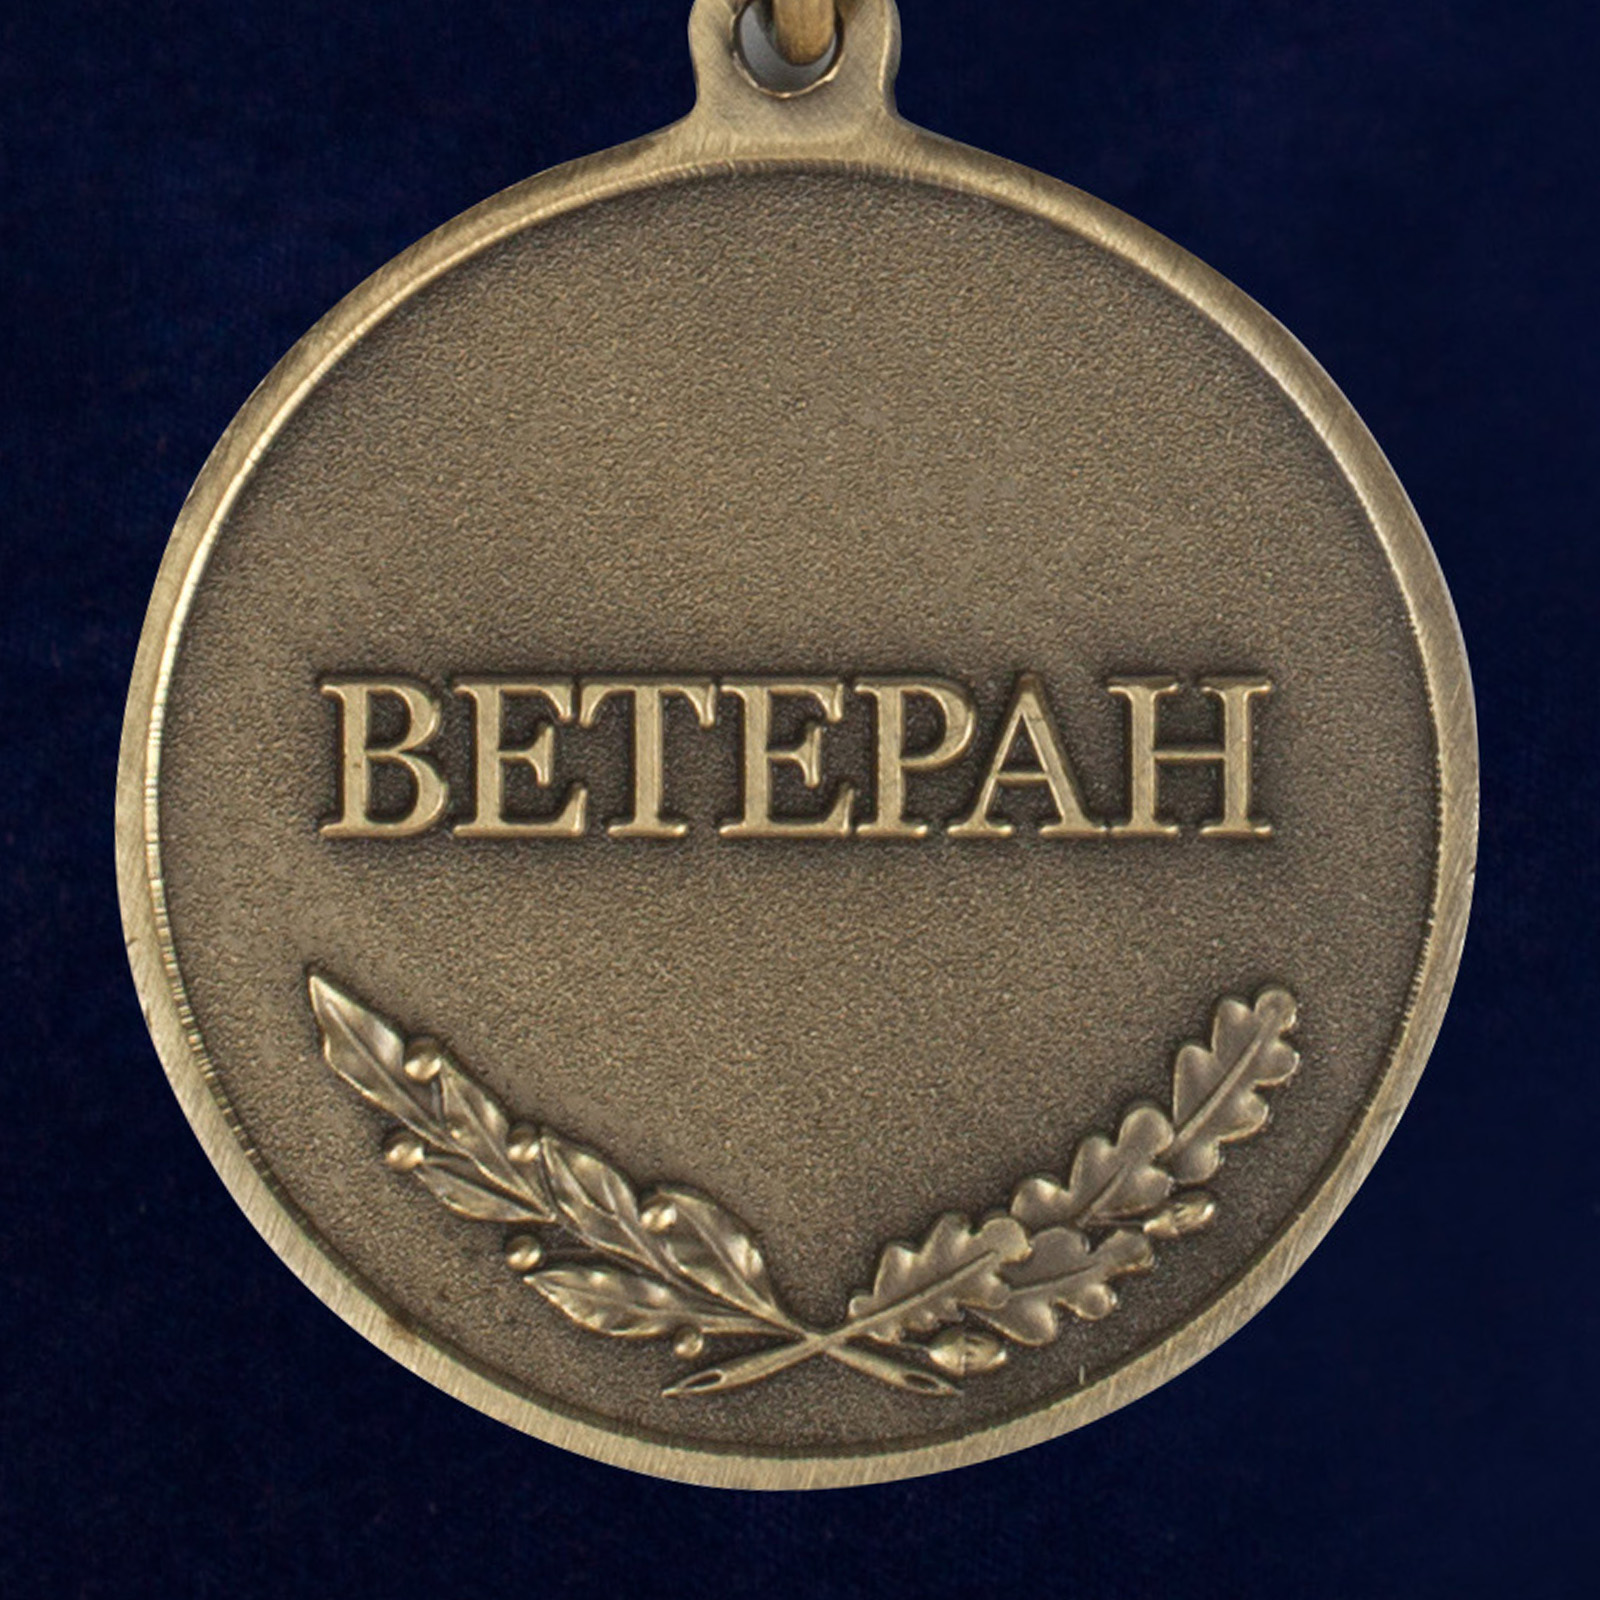 Медаль "Пограничная Служба ФСБ России" (Ветеран) 